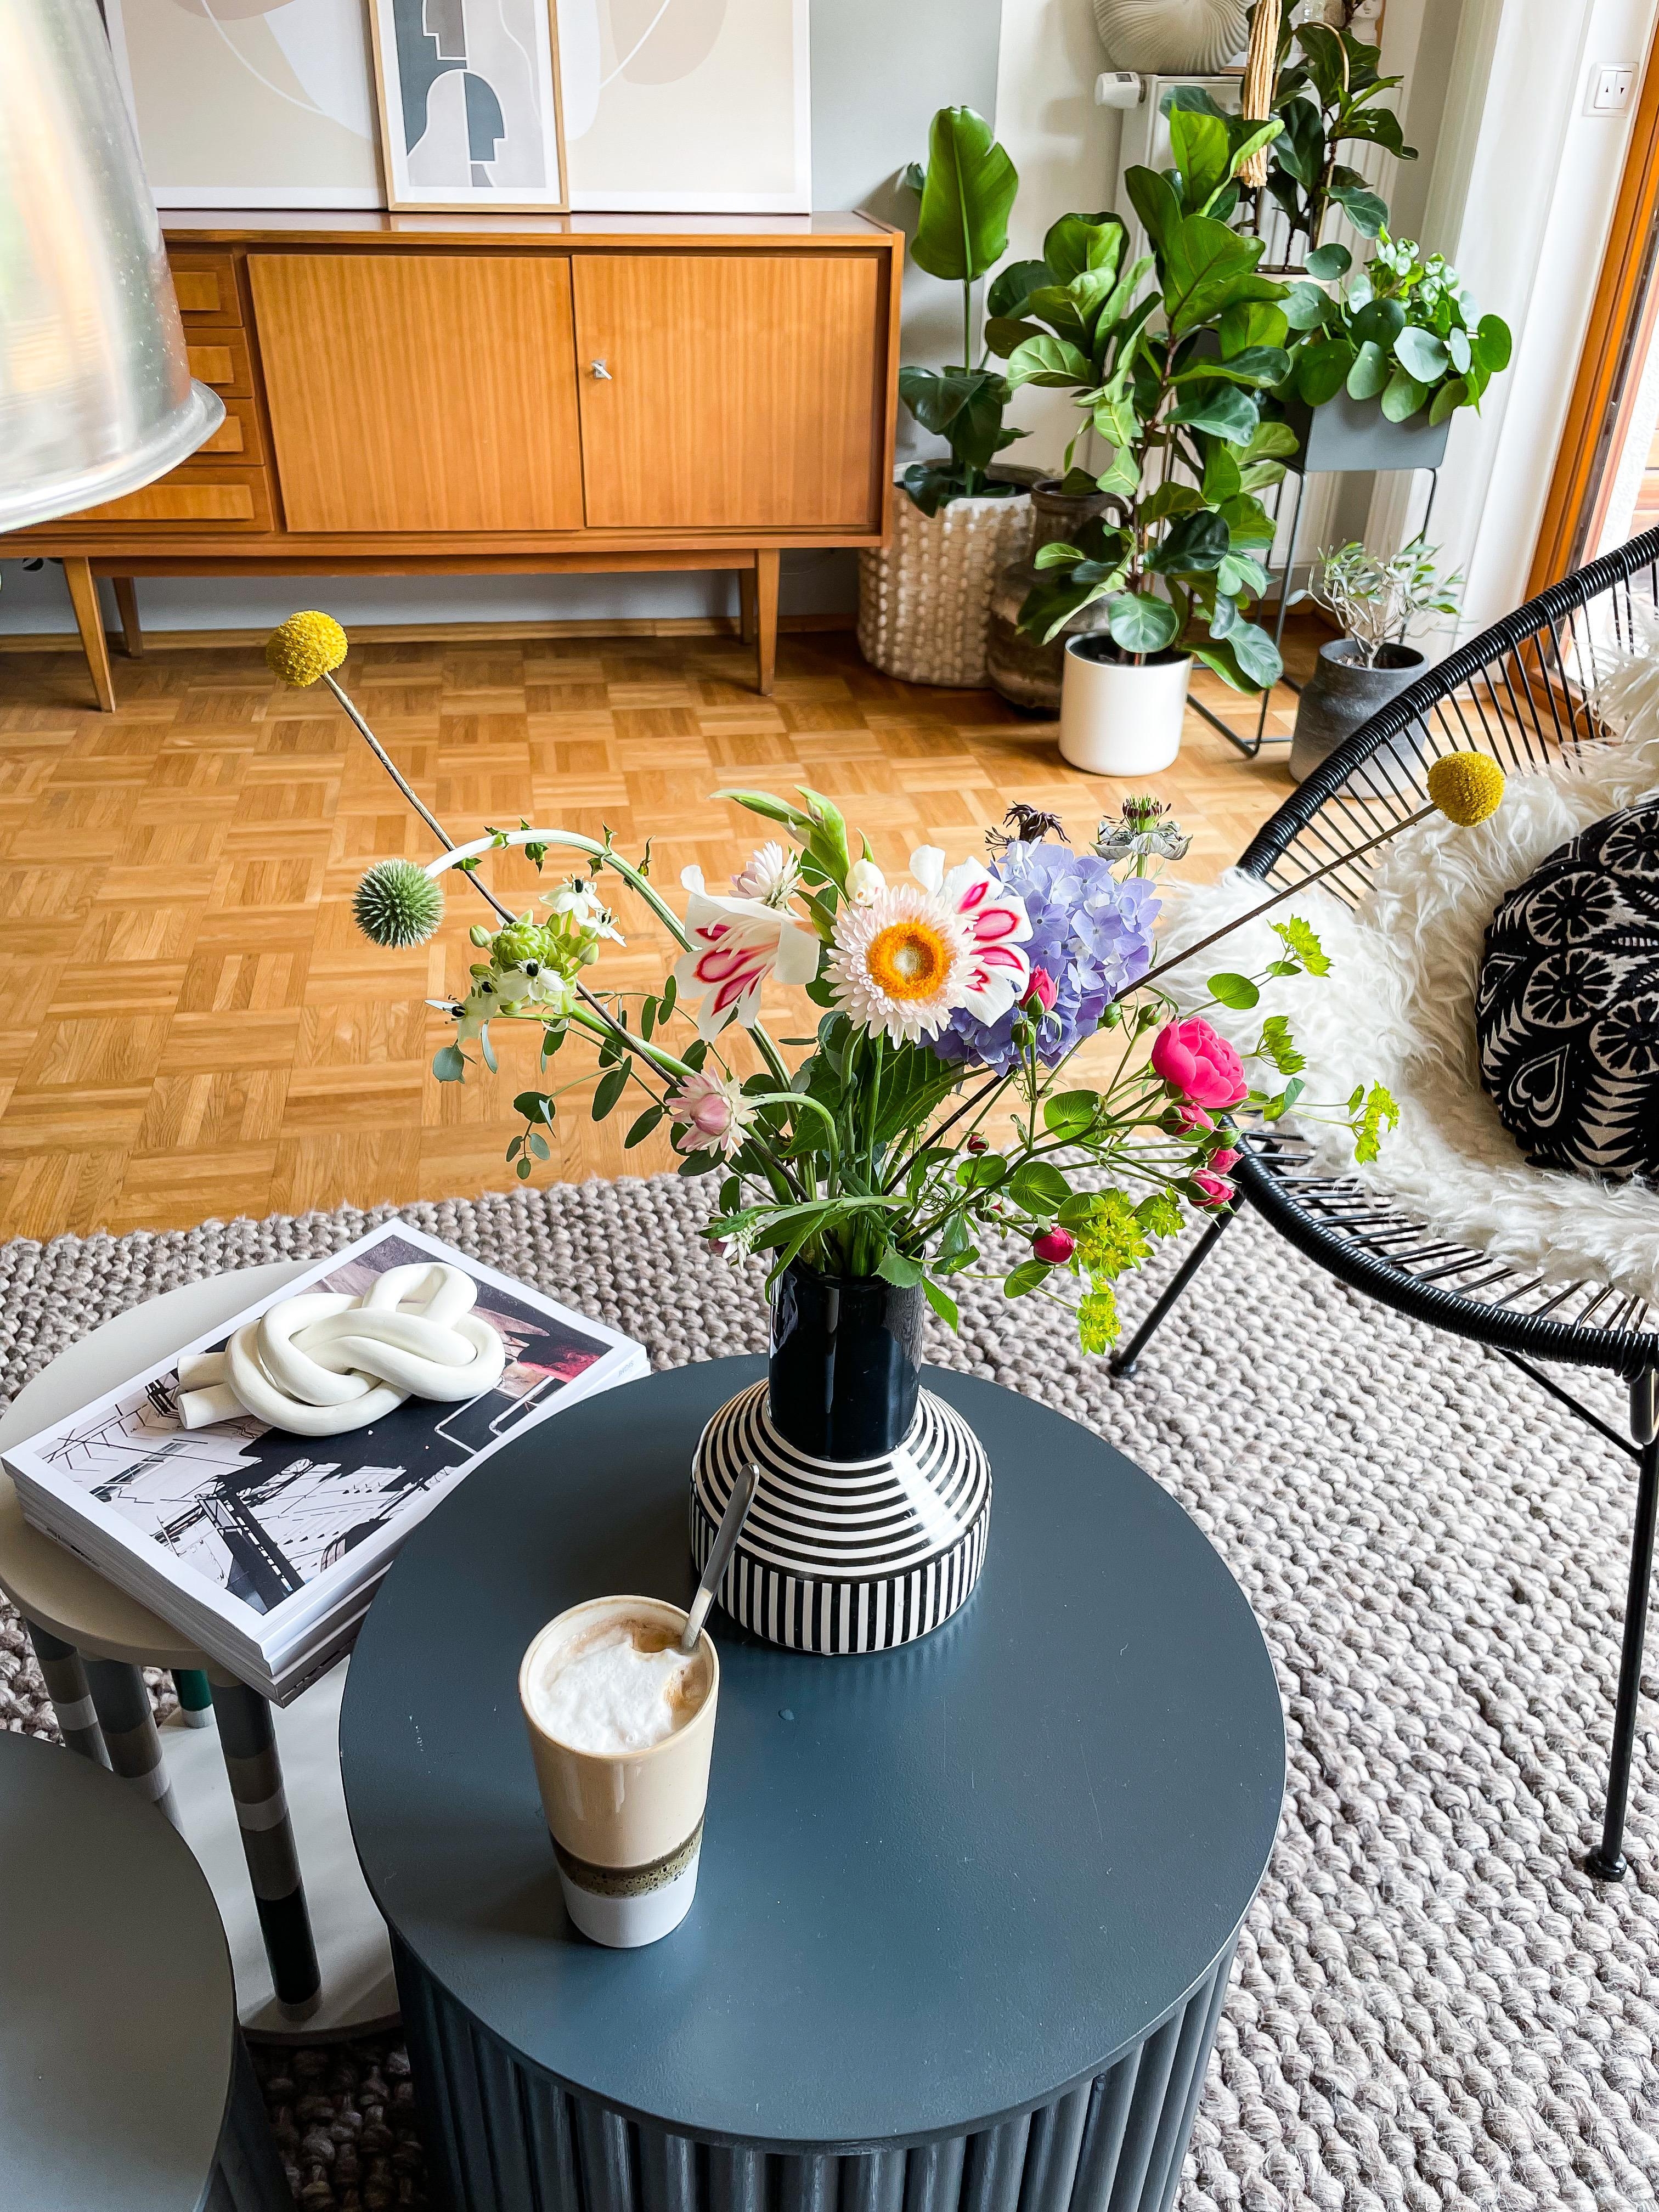 Blumen und Kaffee ... Lebenselixier!

#wohnzimmer #sideboard #vintage #vase #blumen #pflanzen